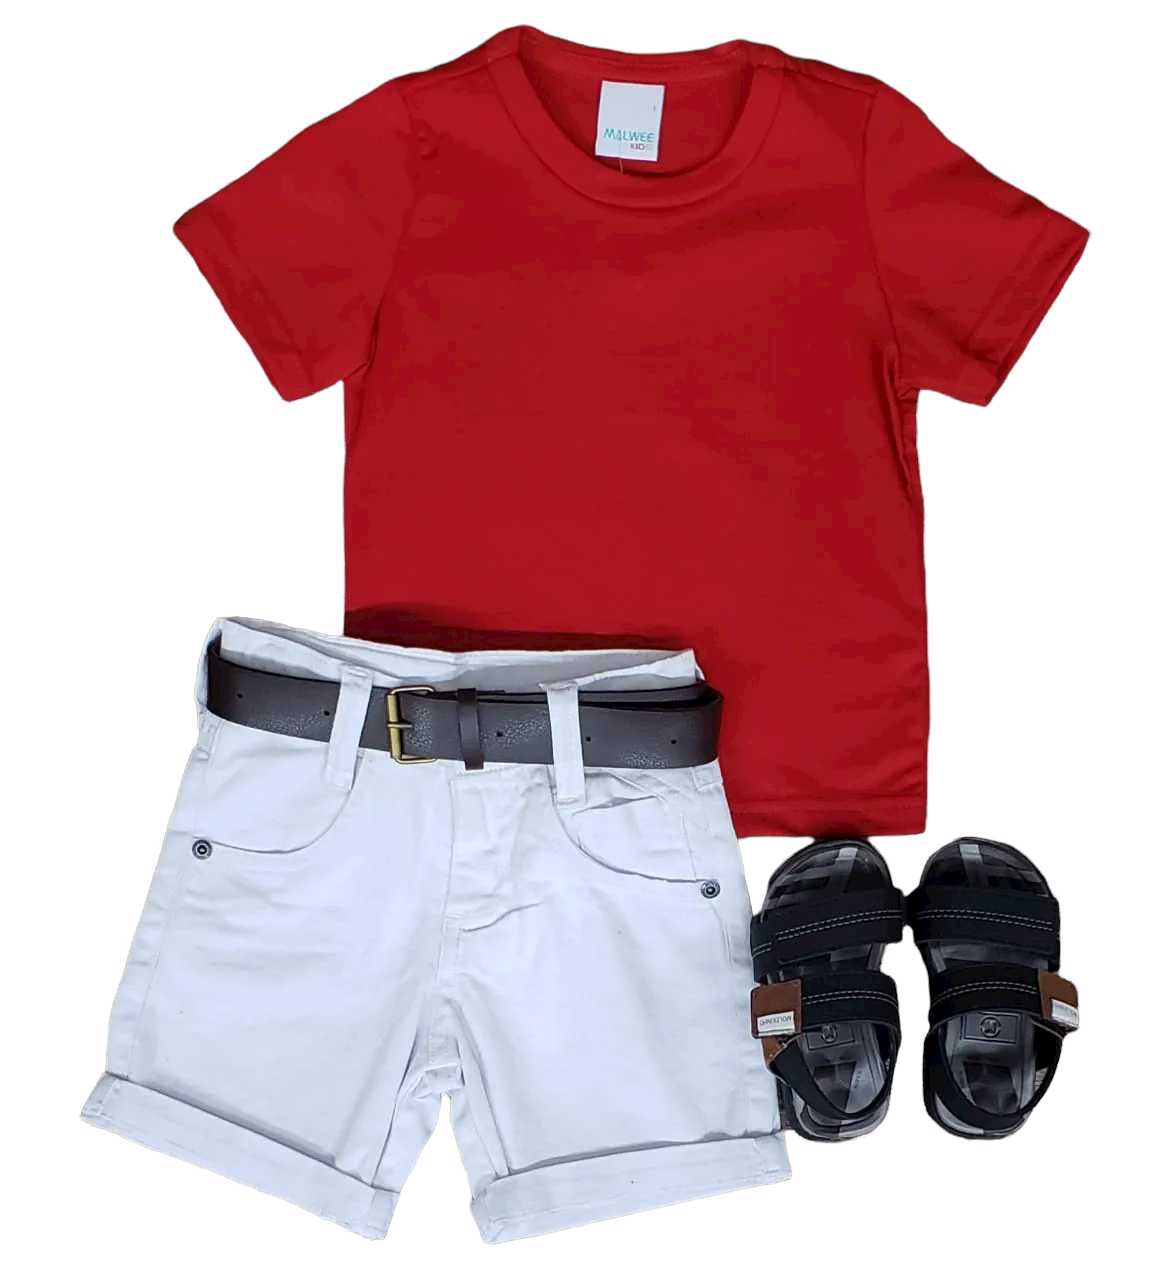 Bermuda Branca com Camiseta Vermelha